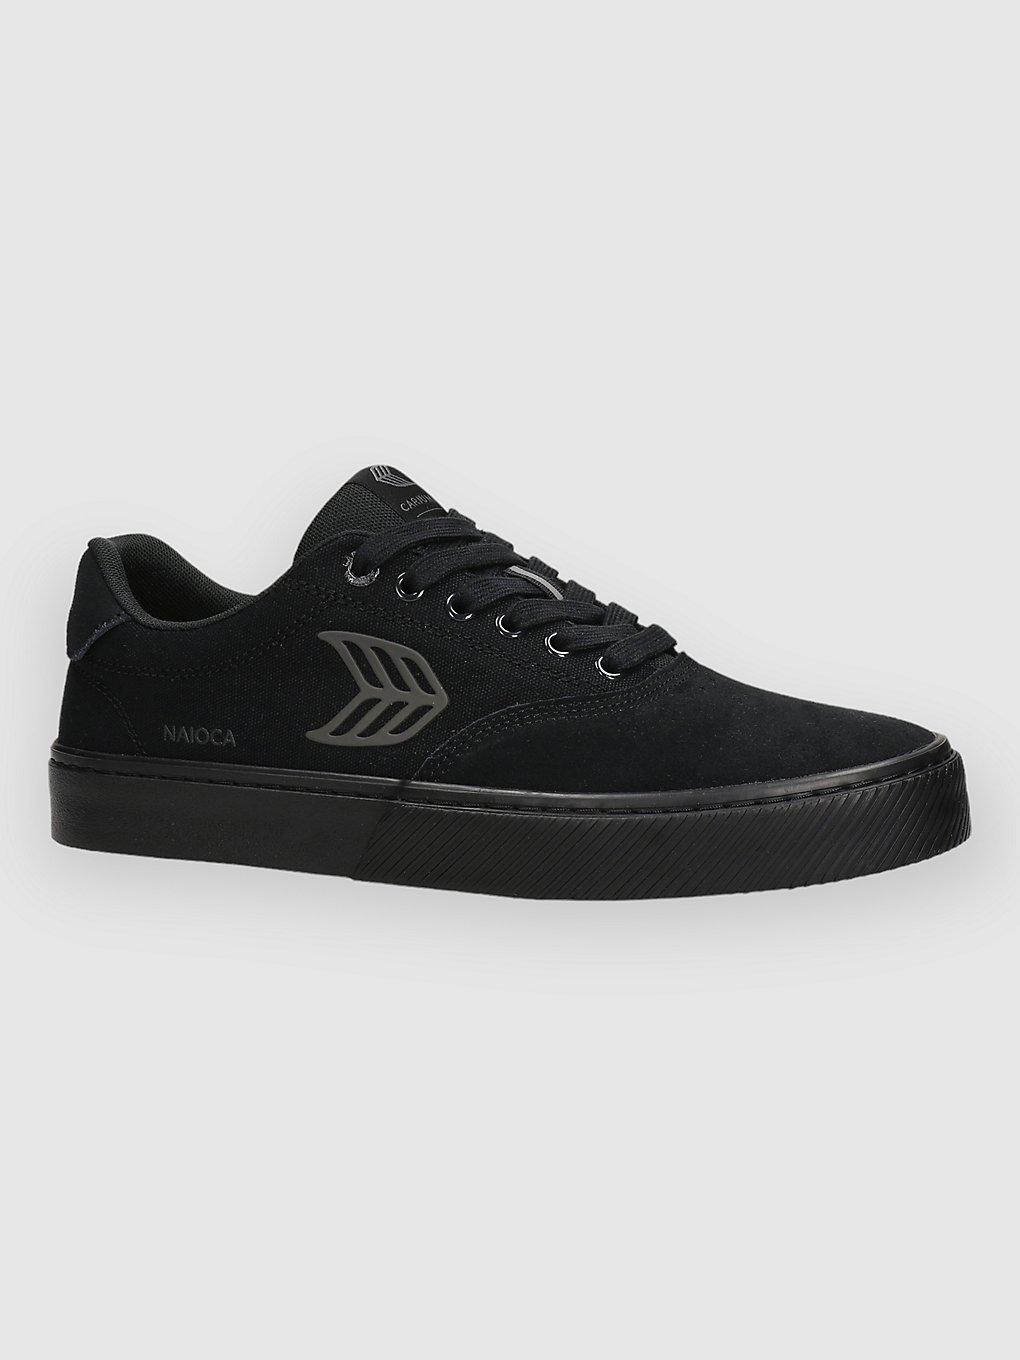 cariuma naioca skate shoes all black